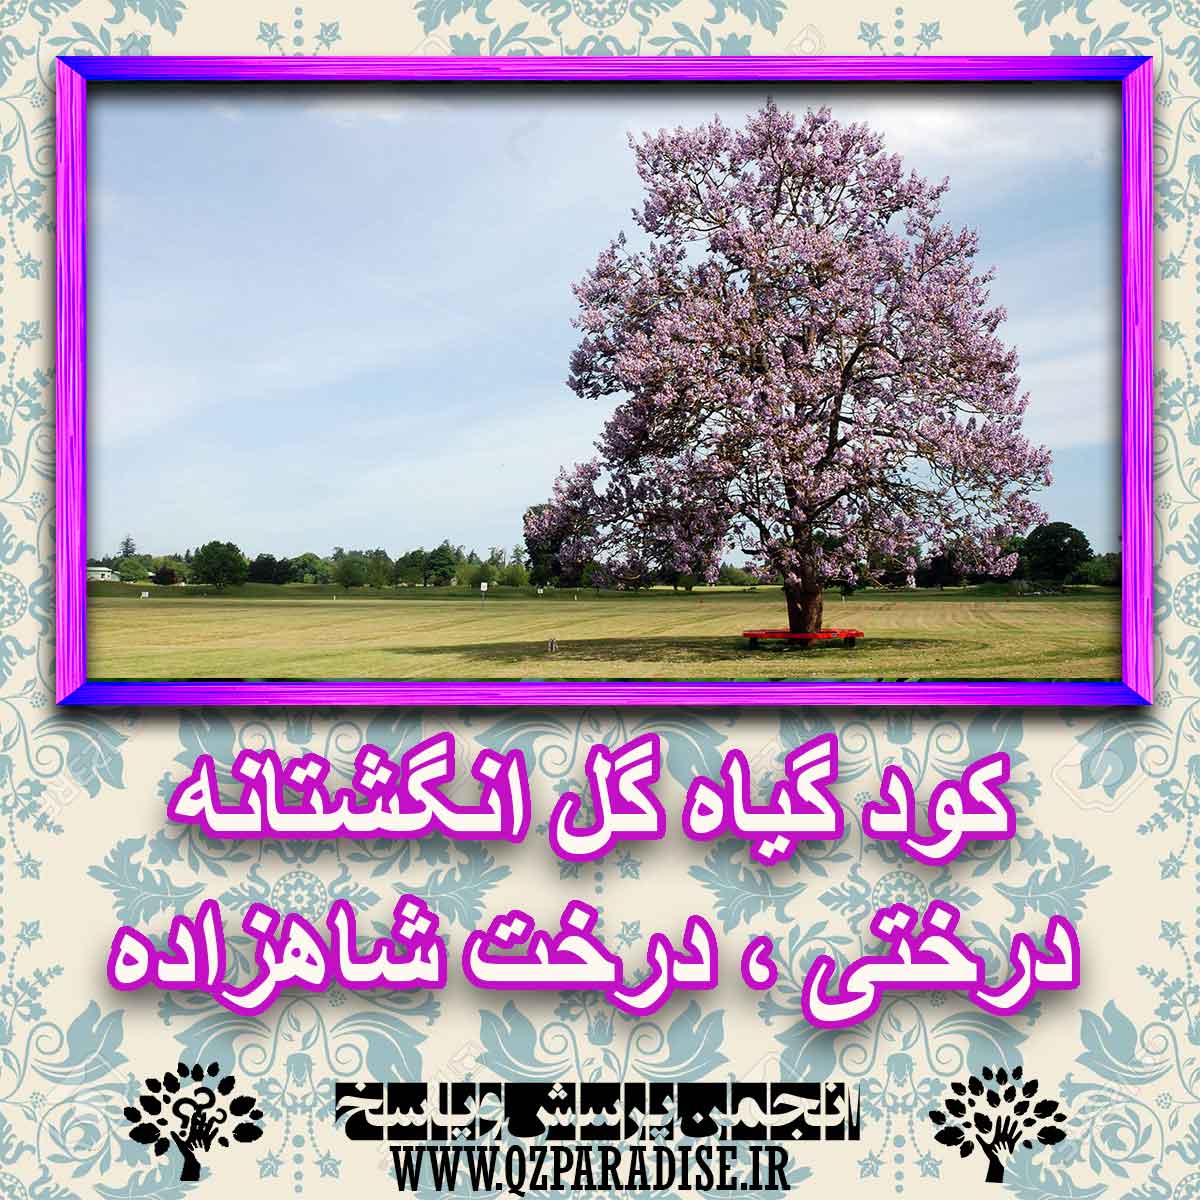 8e1bc9213e7f46aca14a138123ff45ba1517c416 227 - کود مناسب گیاه گل انگشتانه درختی ، درخت شاهزاده چیست و چه خاصیتی دارد؟